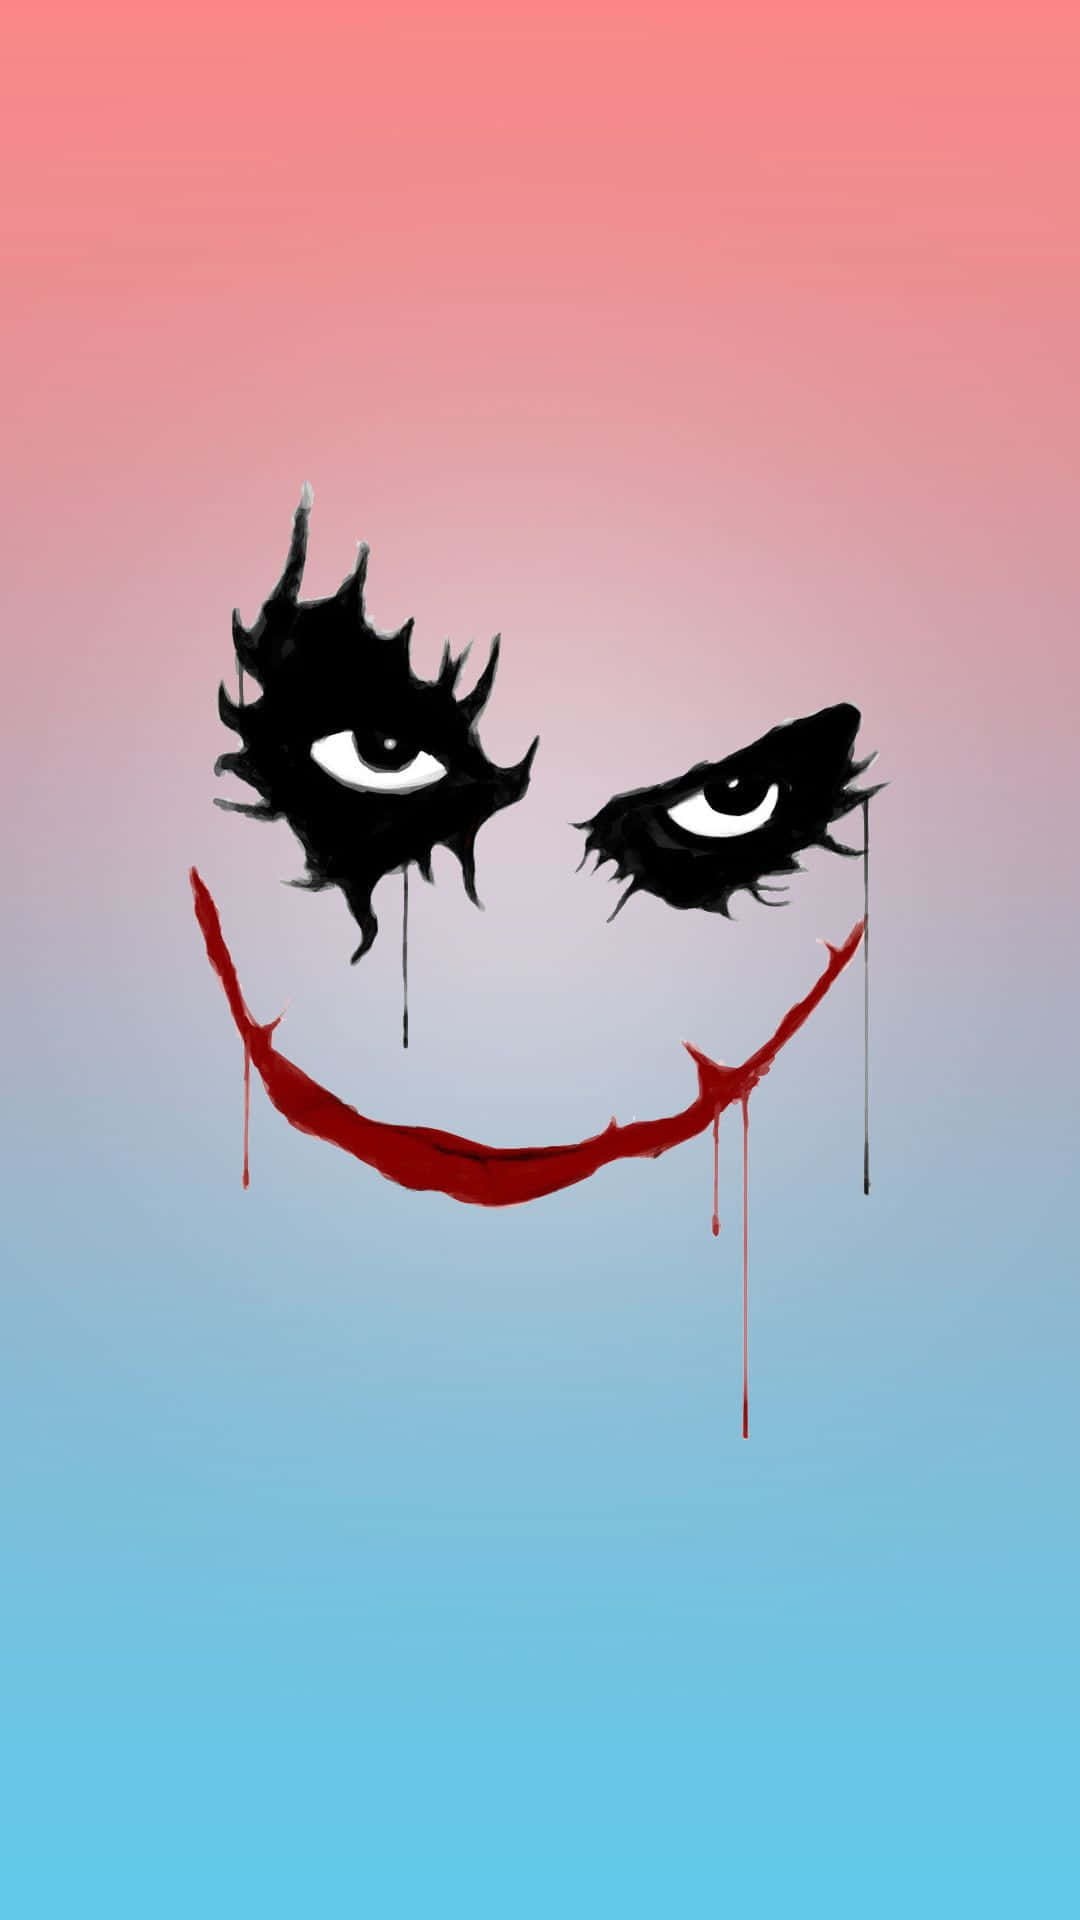 The Sinister Smile - Joker Art Wallpaper